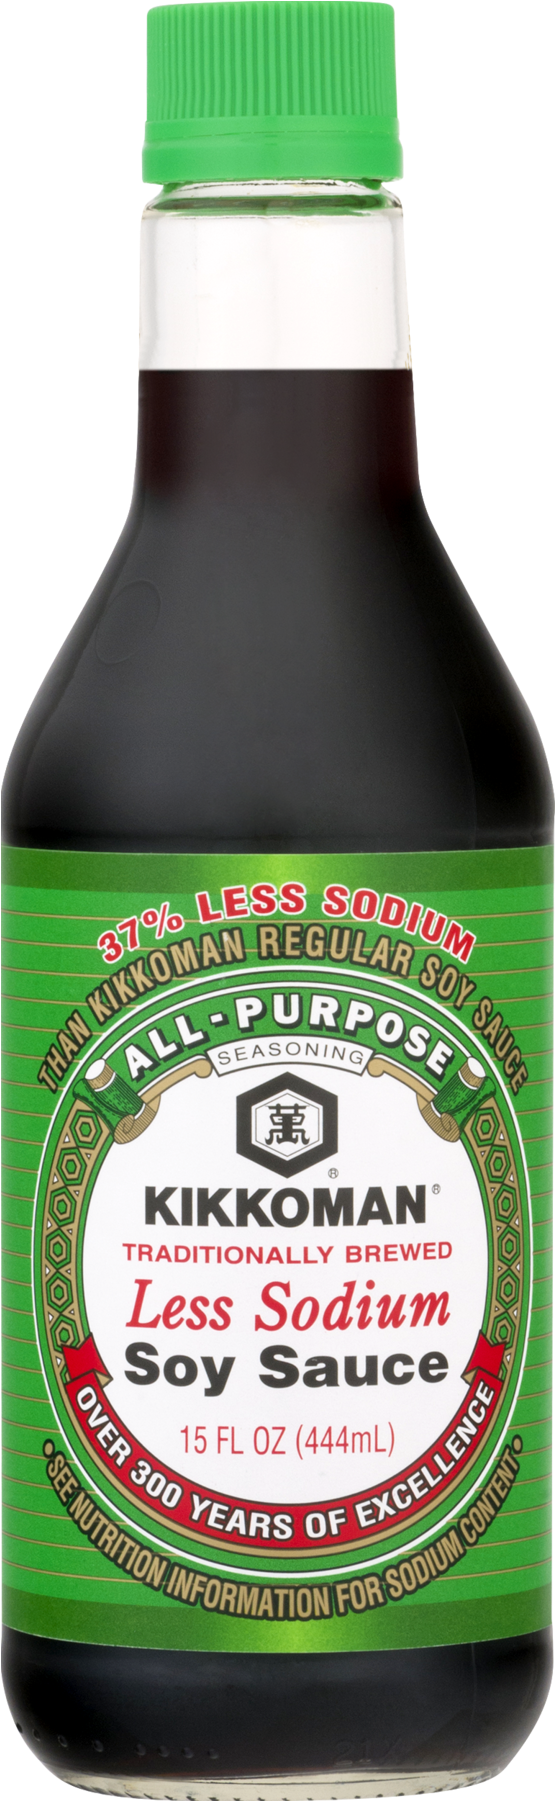 Kikkoman Less Sodium Soy Sauce - 5 Fl Oz Bottle (1800x1800), Png Download